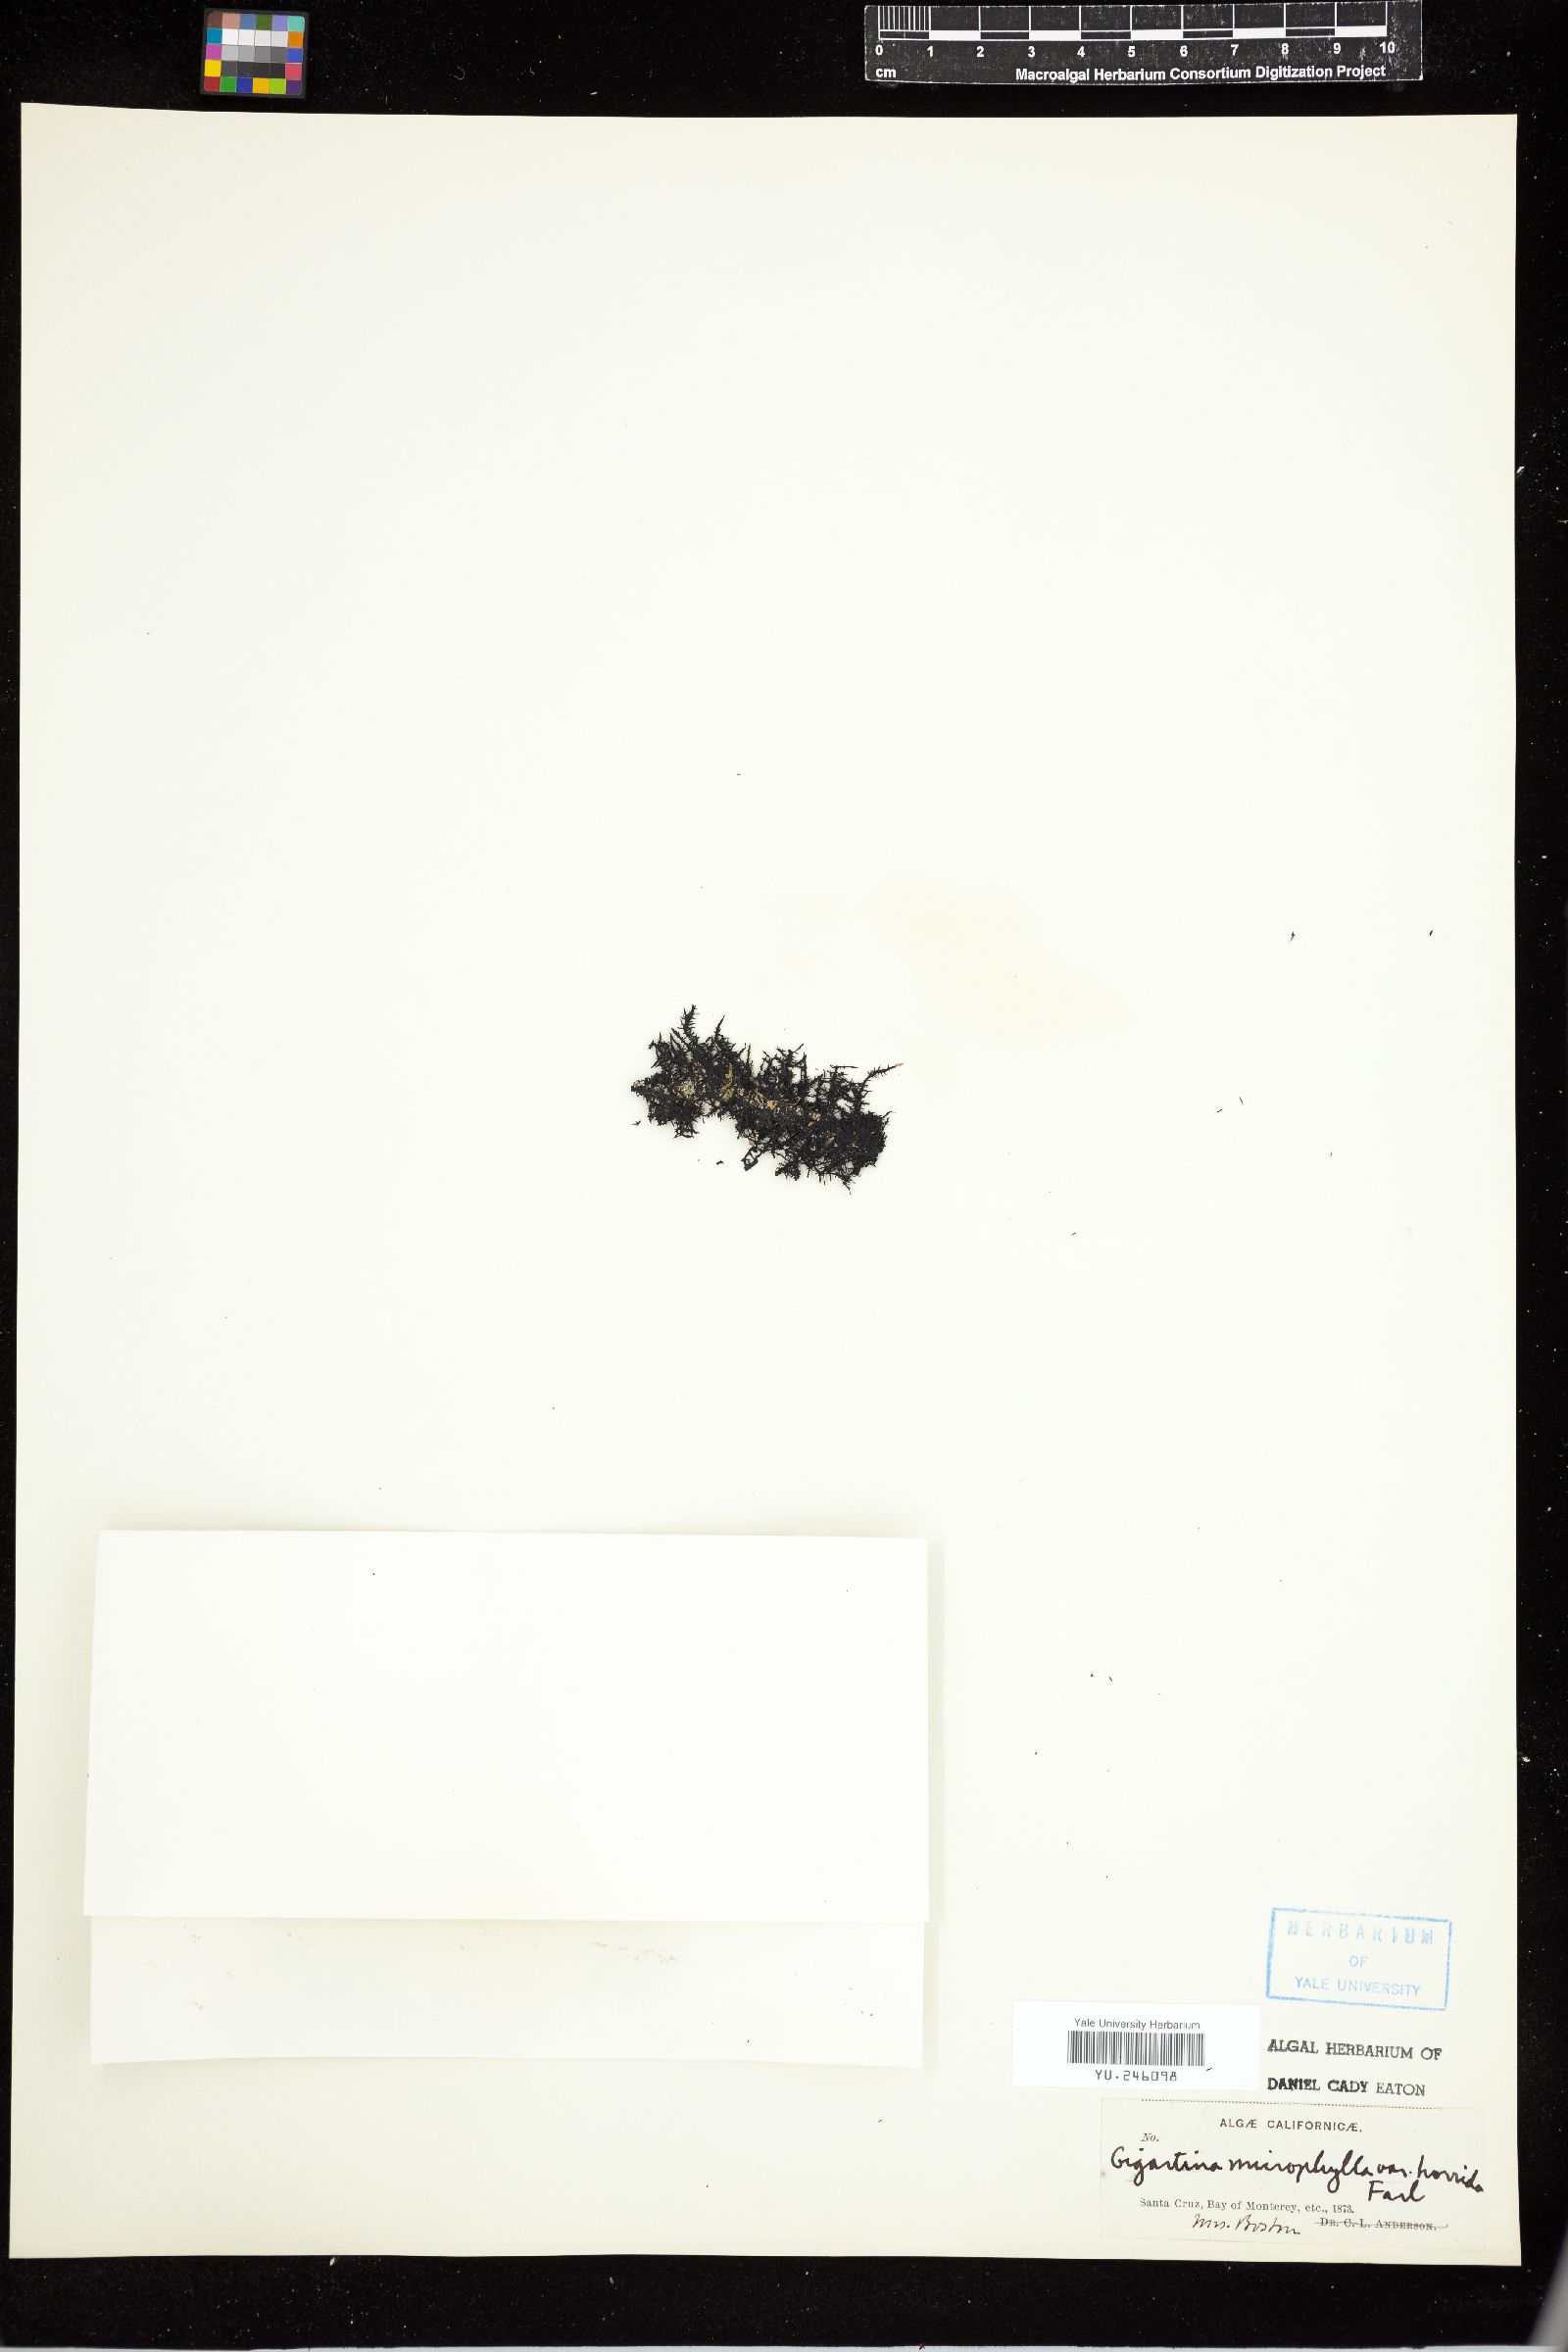 Gigartina microphylla var. horrida image